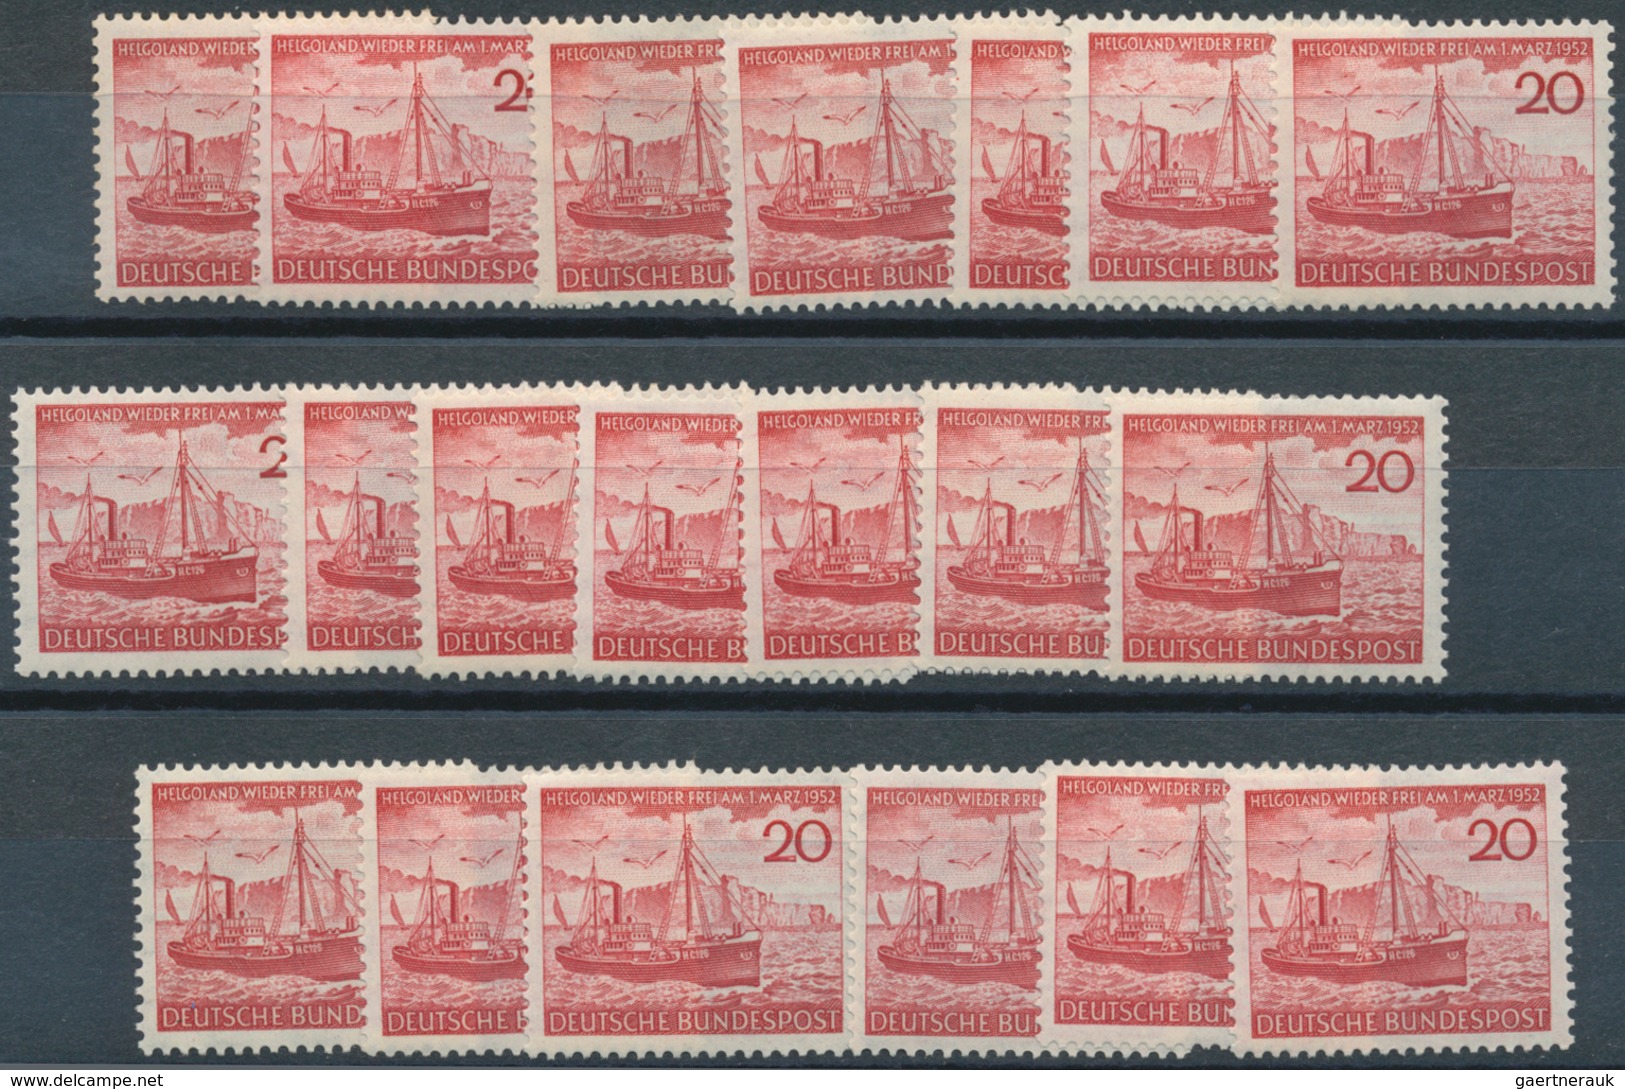 Bundesrepublik Deutschland: 1952, Helgoland Per 67mal Postfrisch. MiNr. 152, 1.005,- €. - Collections